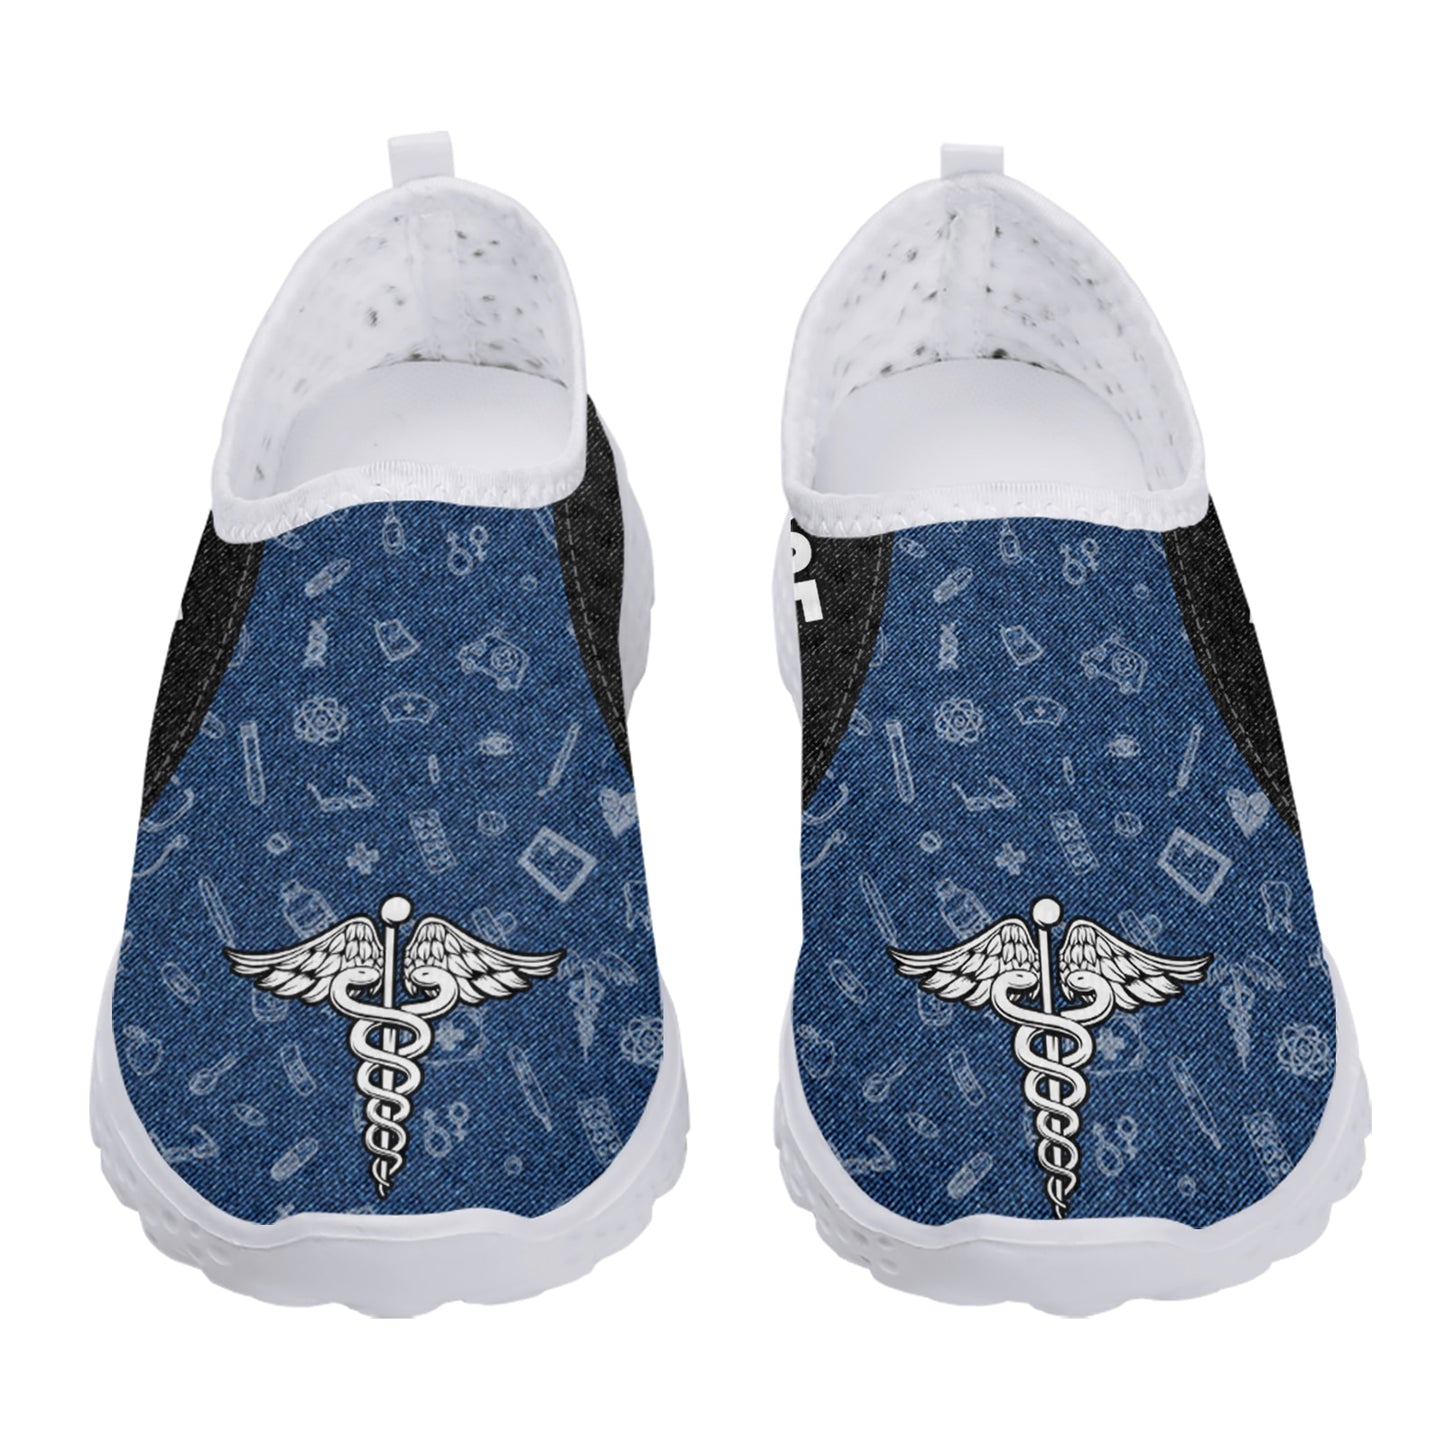 Zapatos de malla con logotipo de enfermera azul, zapatos ligeros y transpirables para el hogar, mocasines planos suaves y ligeros, zapatos informales sin cordones 